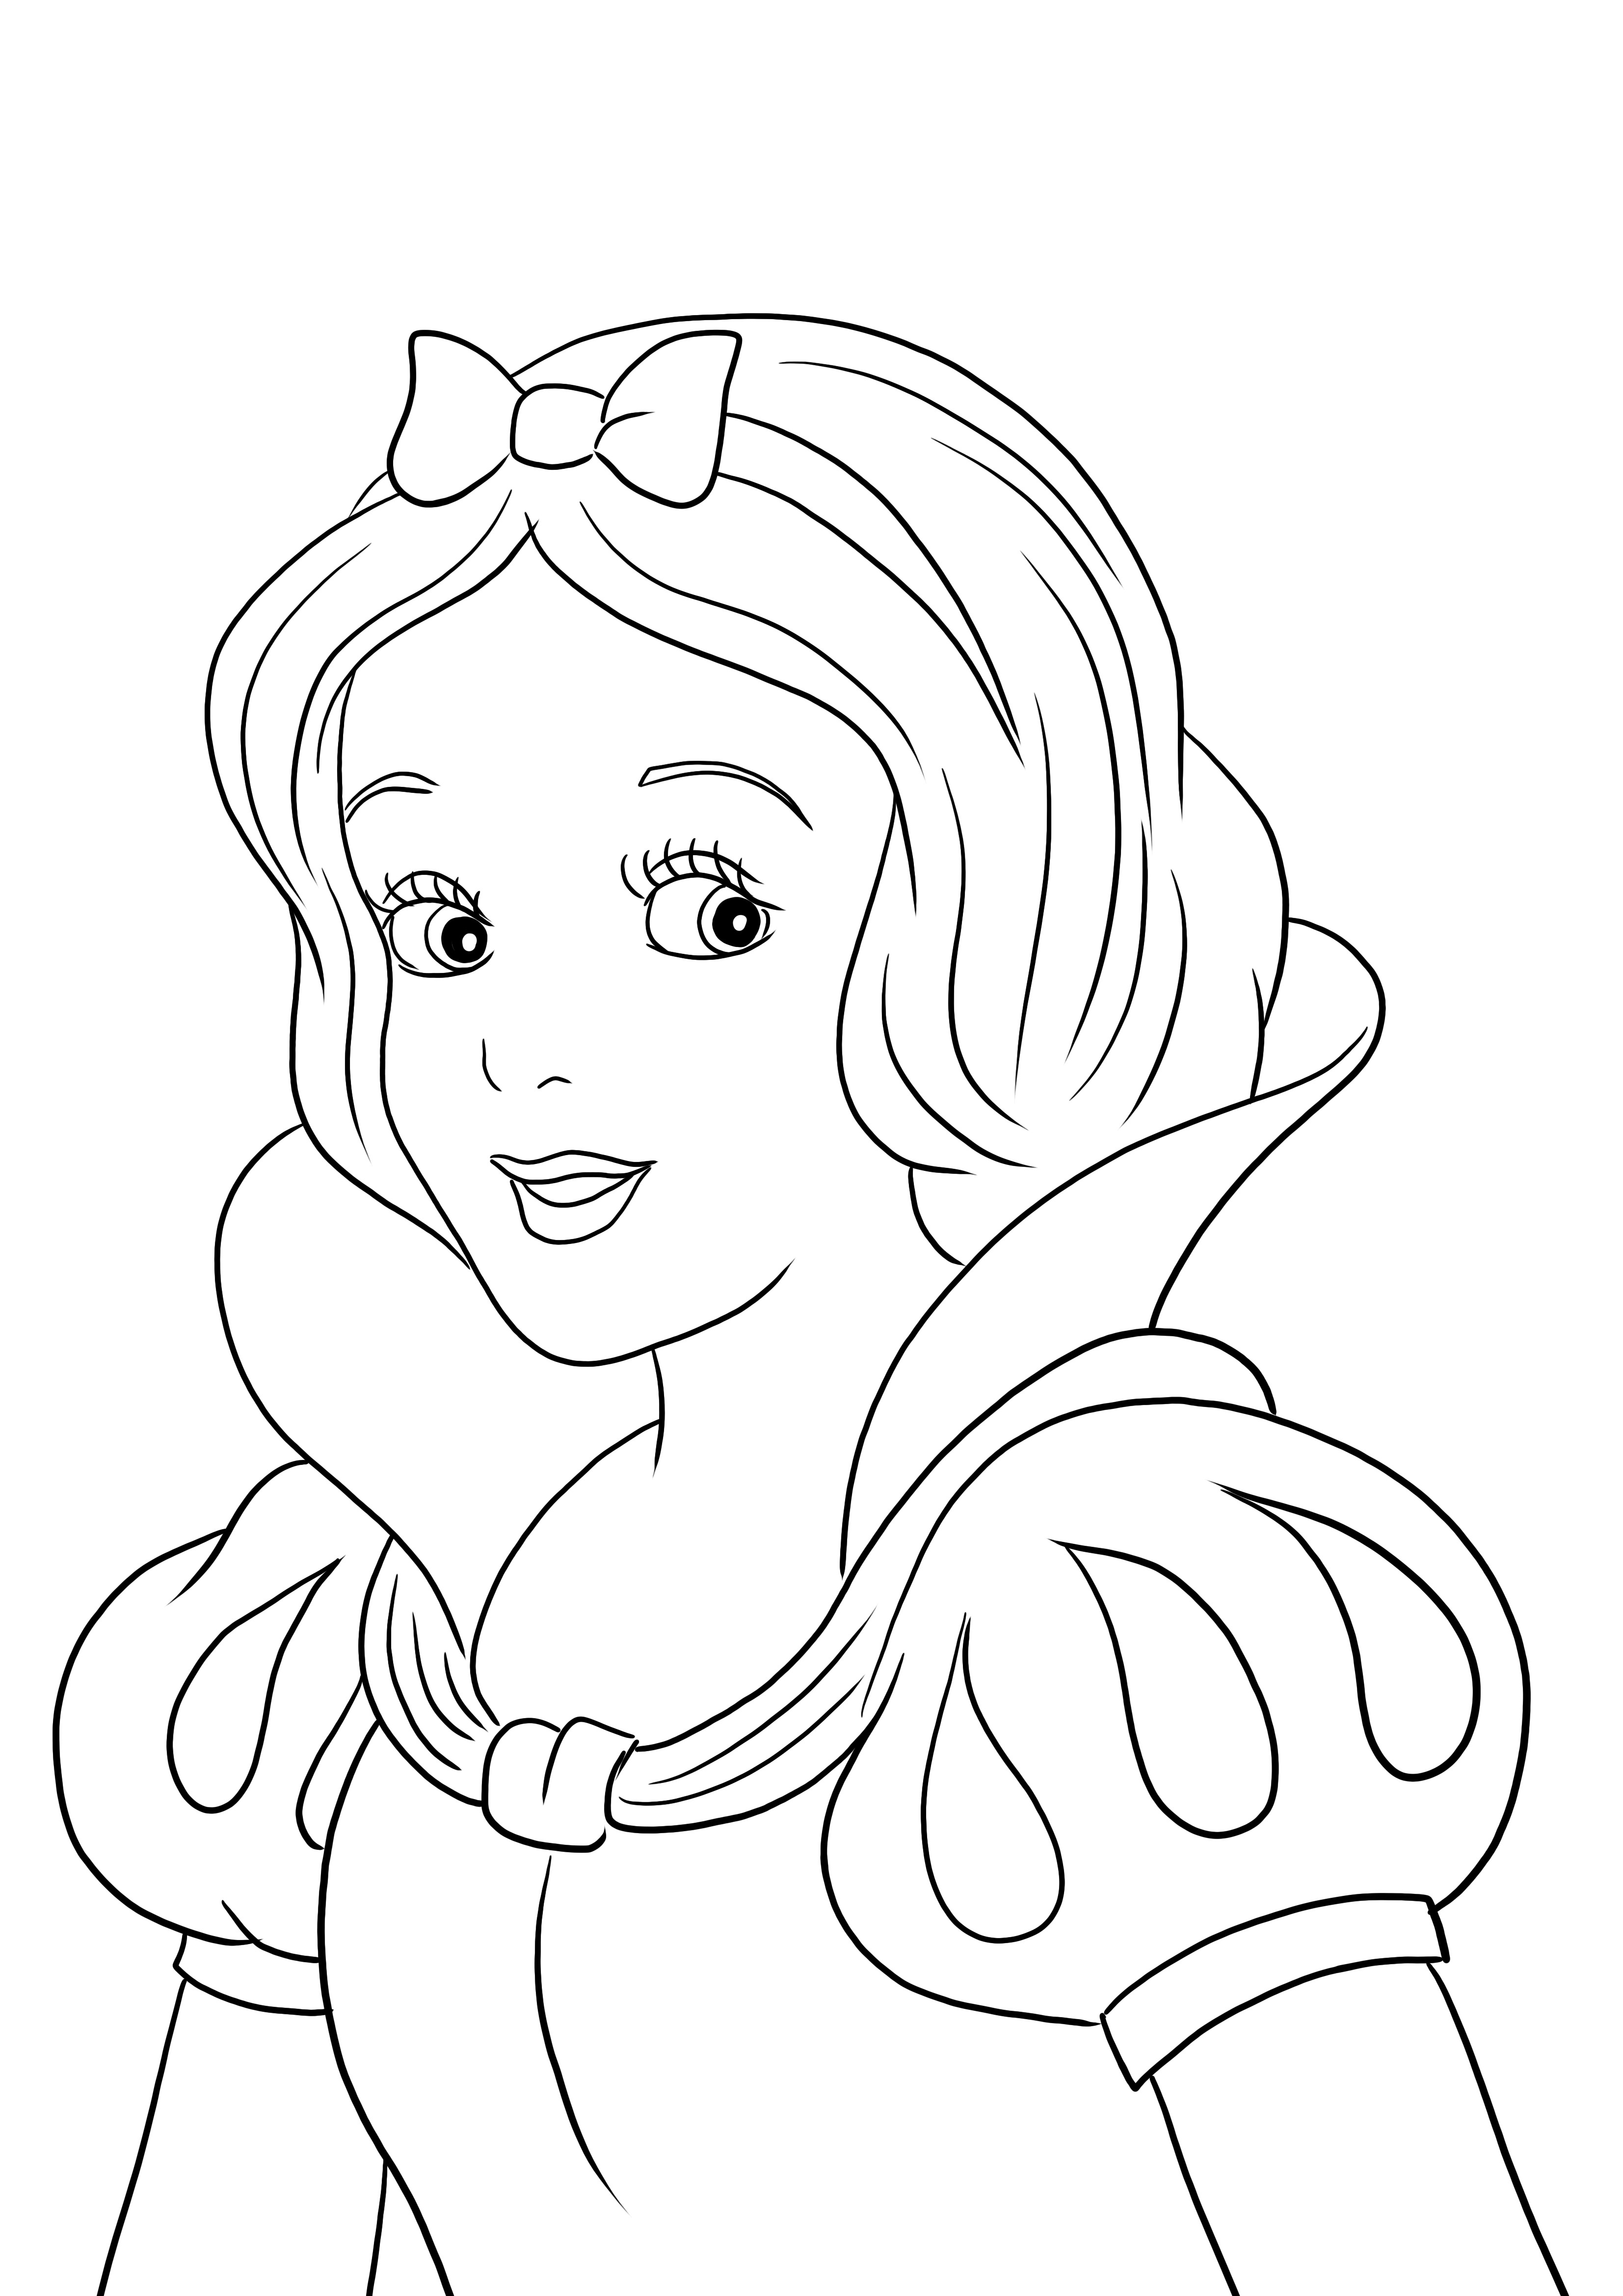 Une jolie image à colorier de Blanche-Neige - facile et gratuite à imprimer pour les enfants à colorier